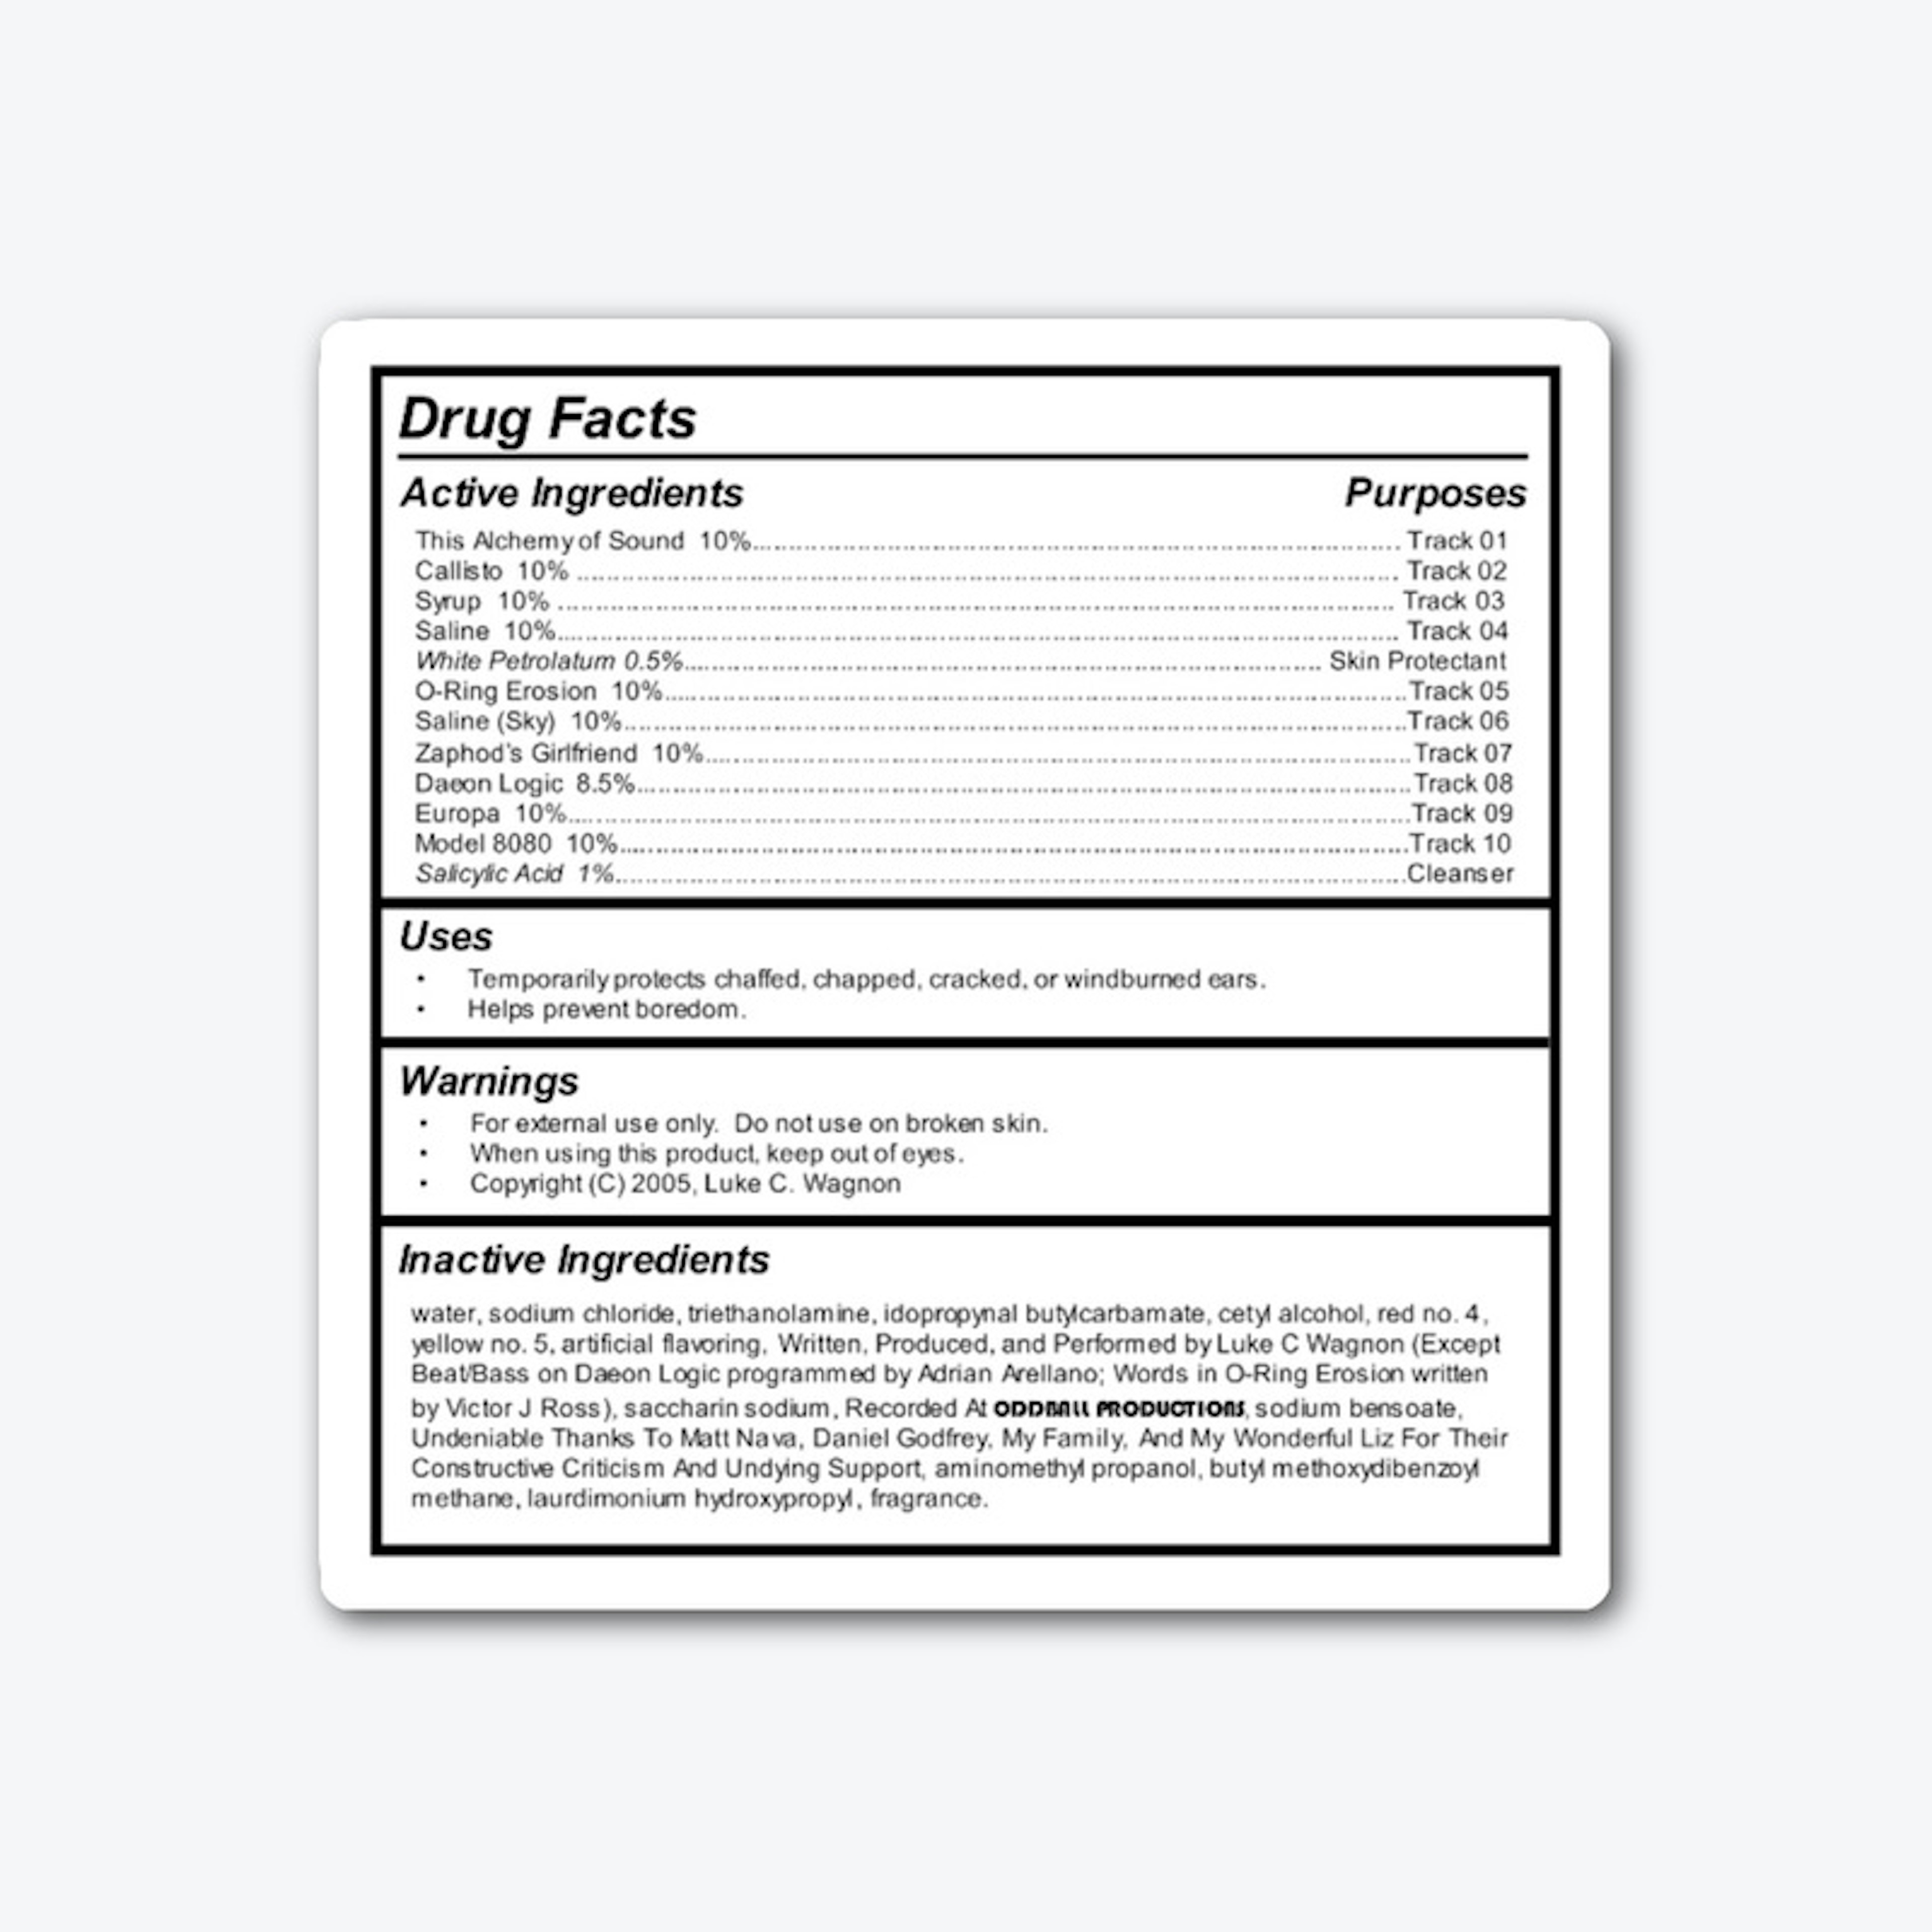 This Alchemy of Sound drug facts Sticker